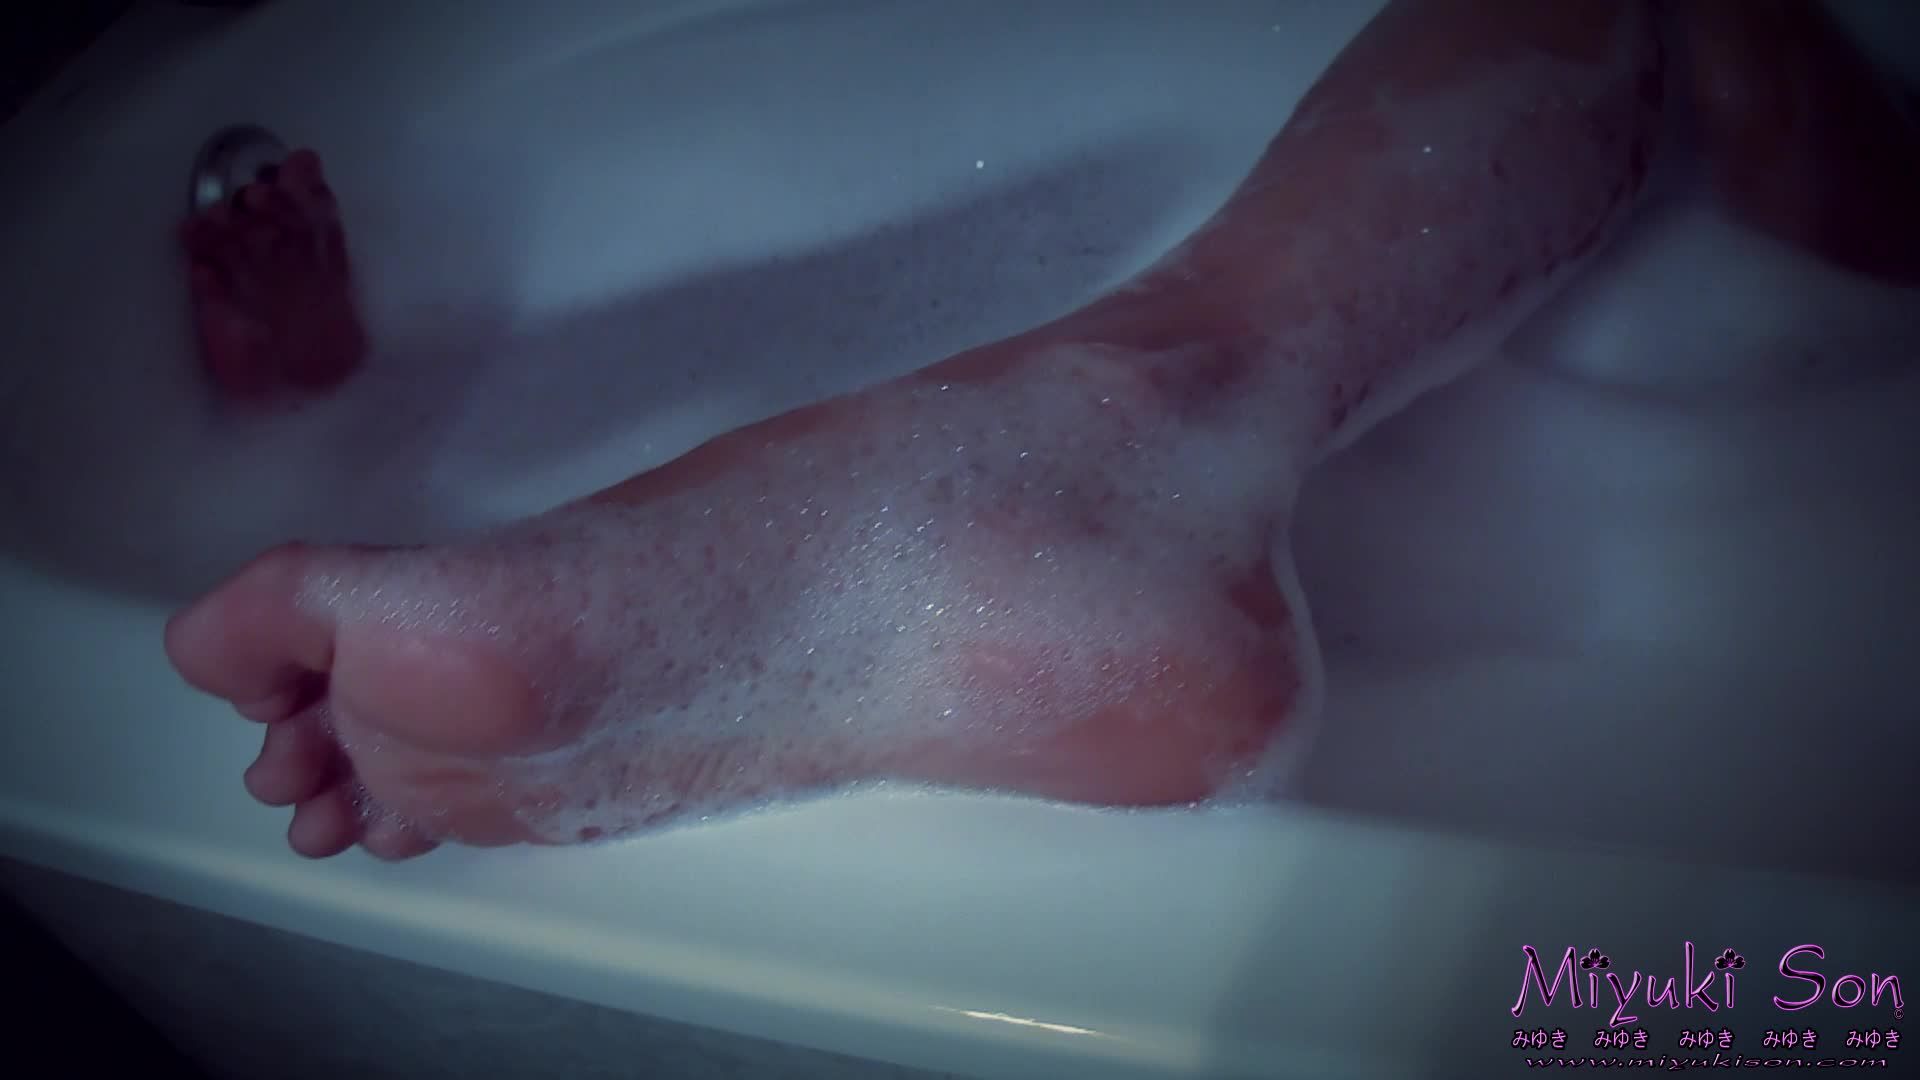 Feet Shower